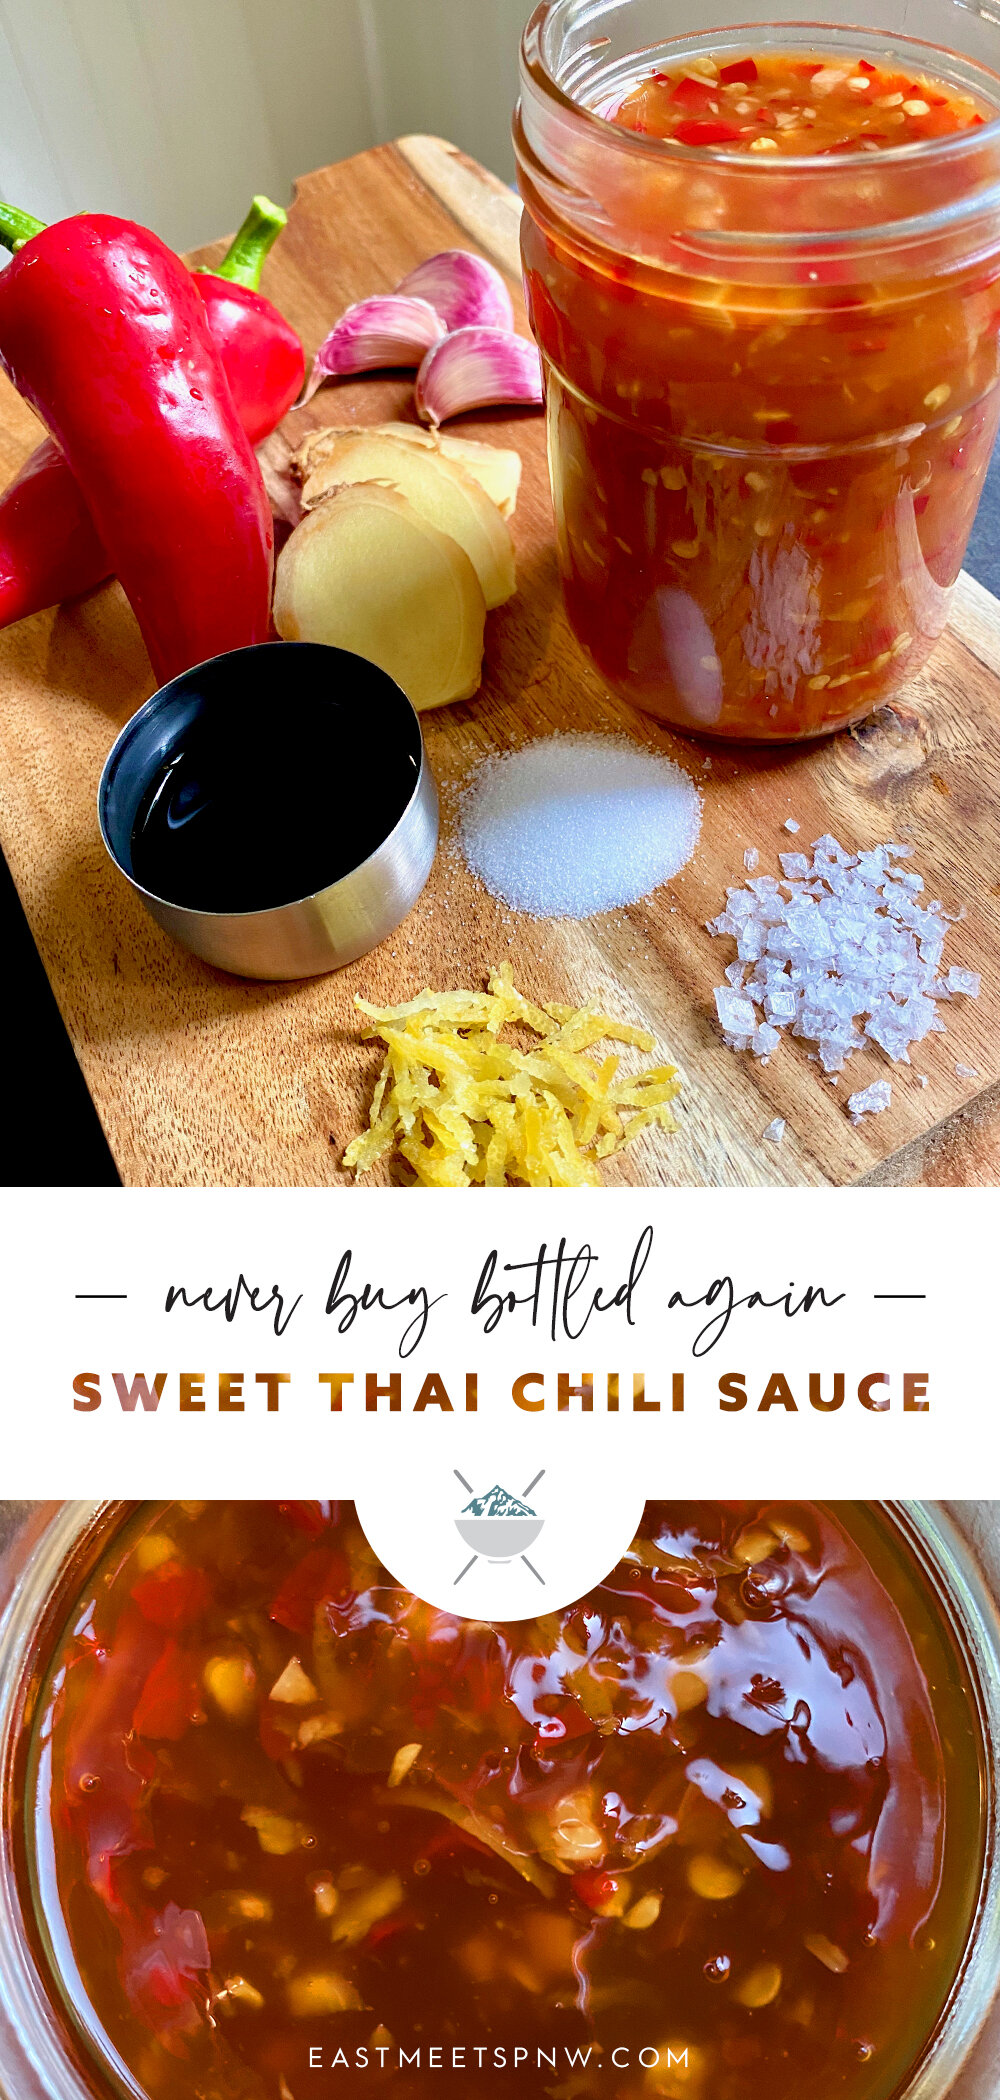 Never Buy Bottled Again! Sweet Thai Chili Sauce — East Meets PNW